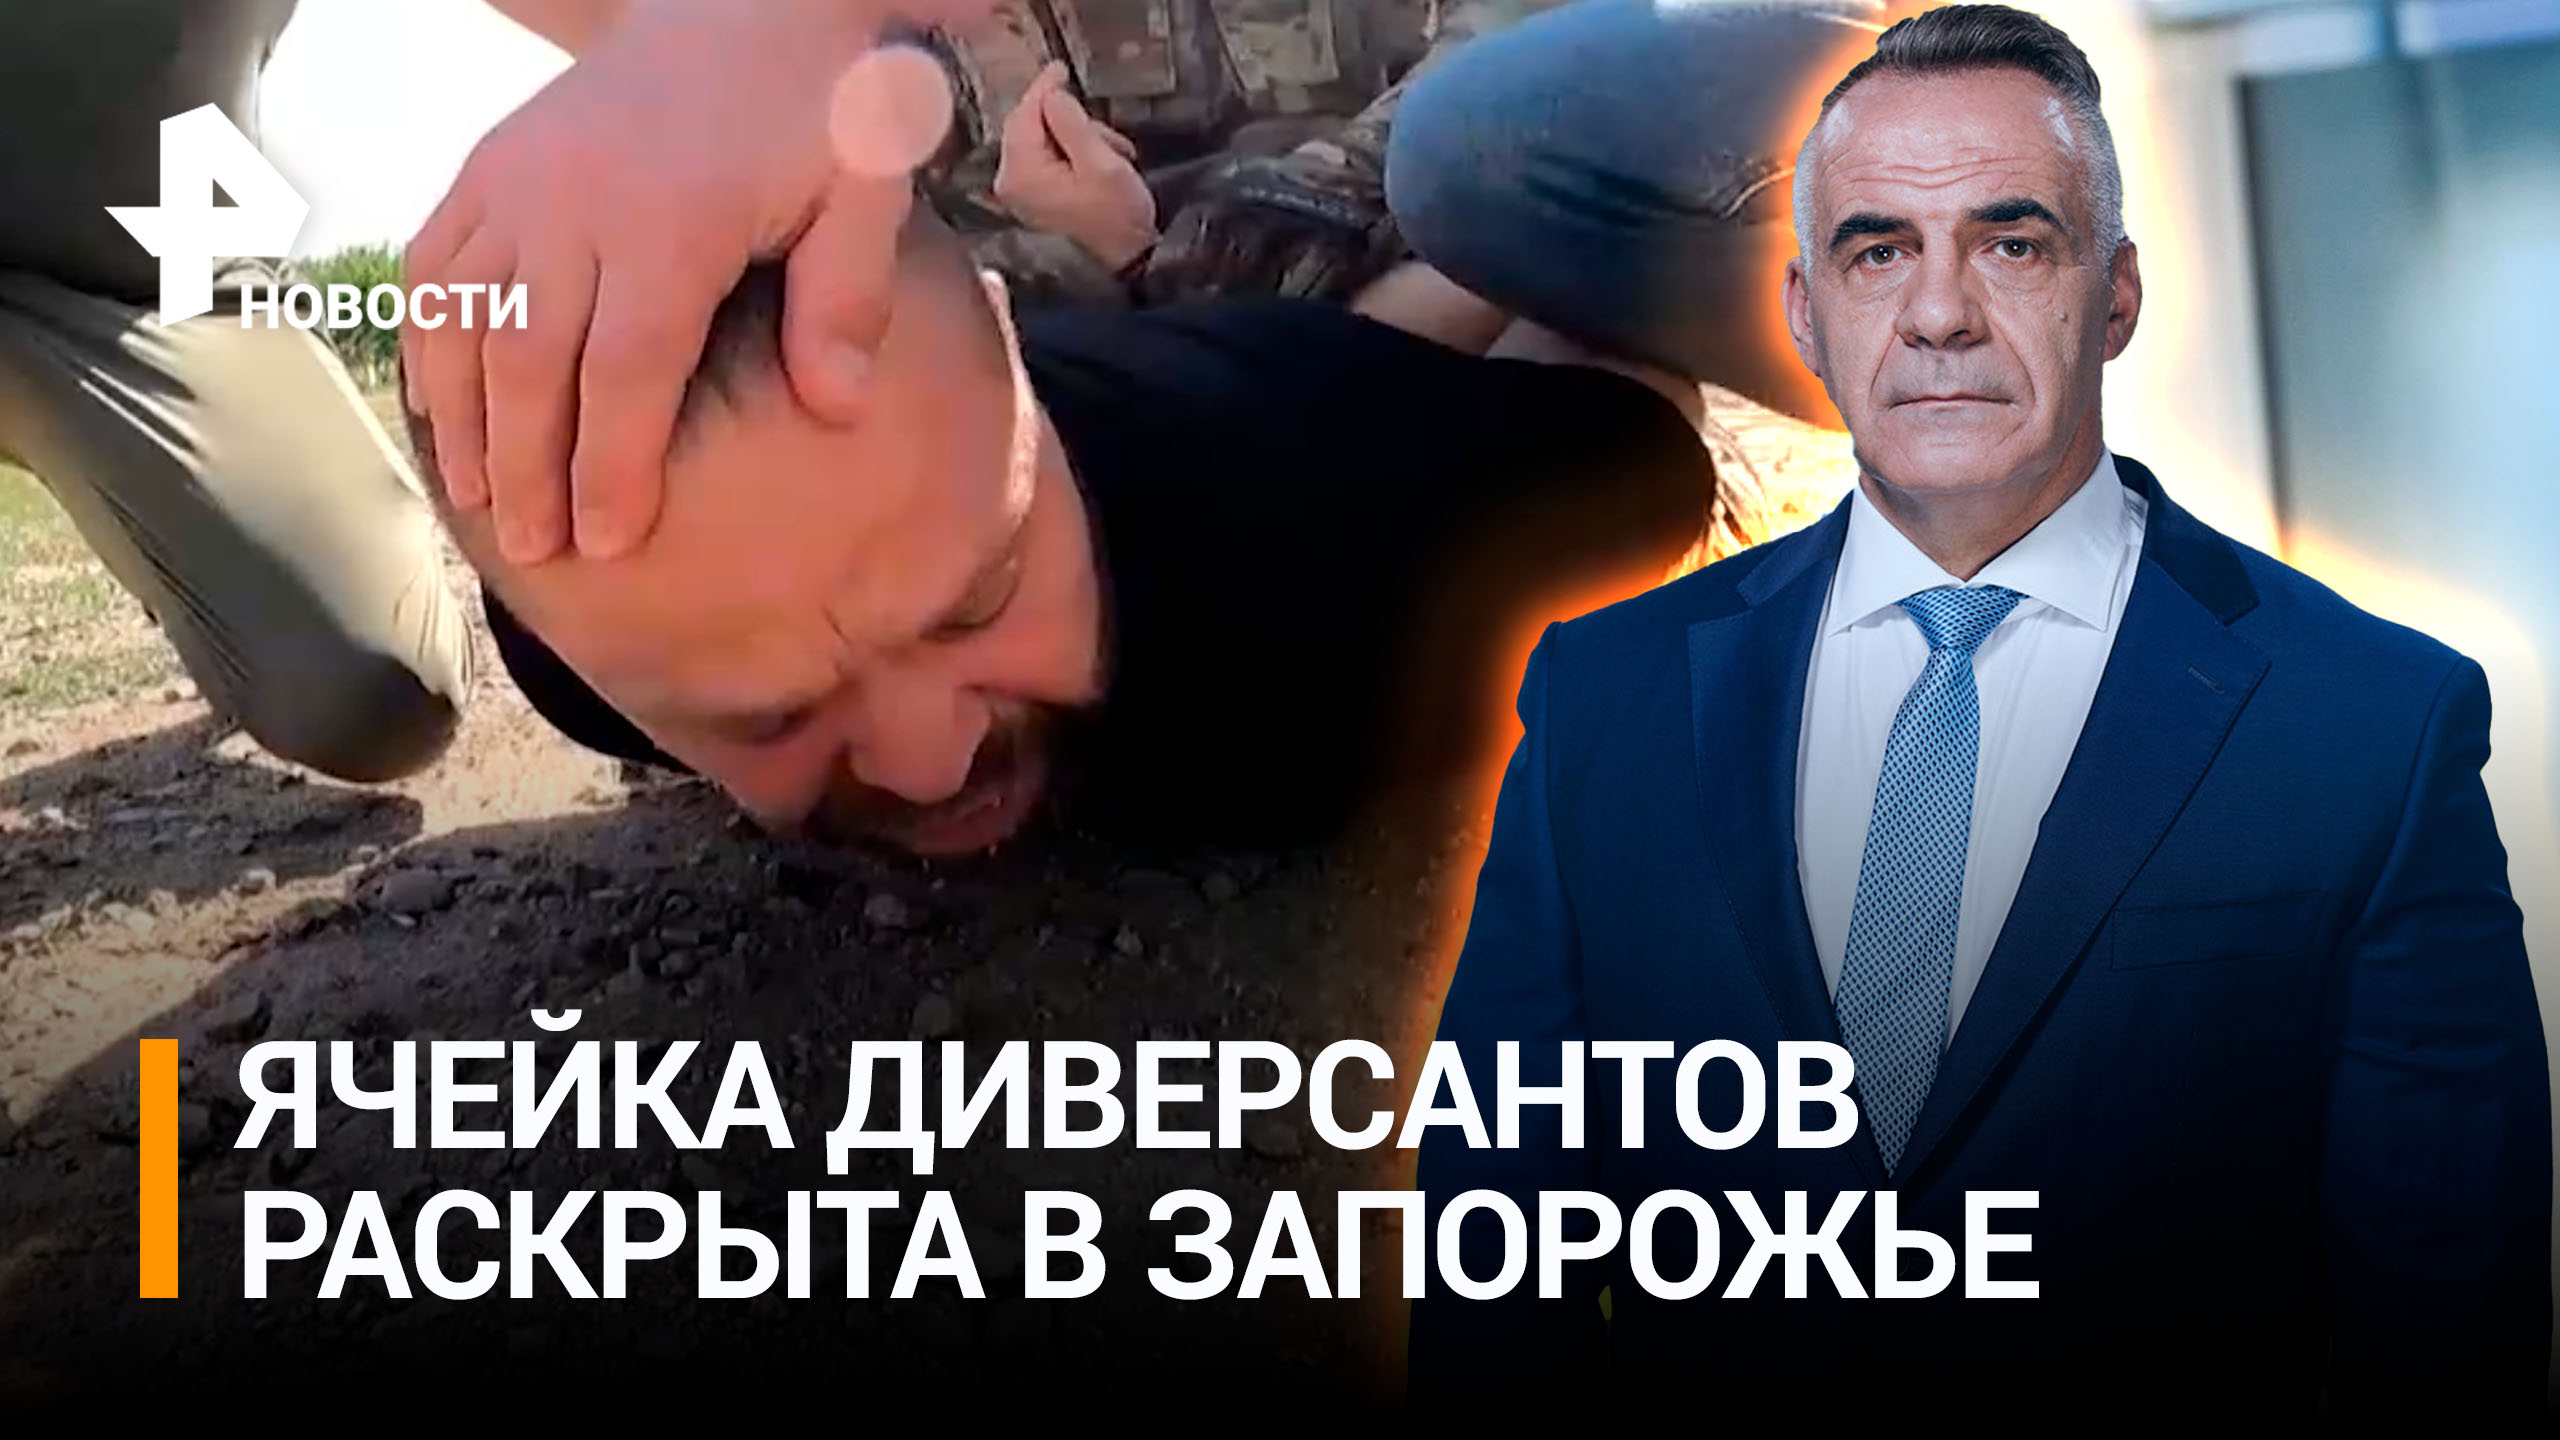 "Я заложил бомбу, хотел ее взорвать": ФСБ накрыла сеть диверсантов / ИТОГИ недели с Петром Марченко